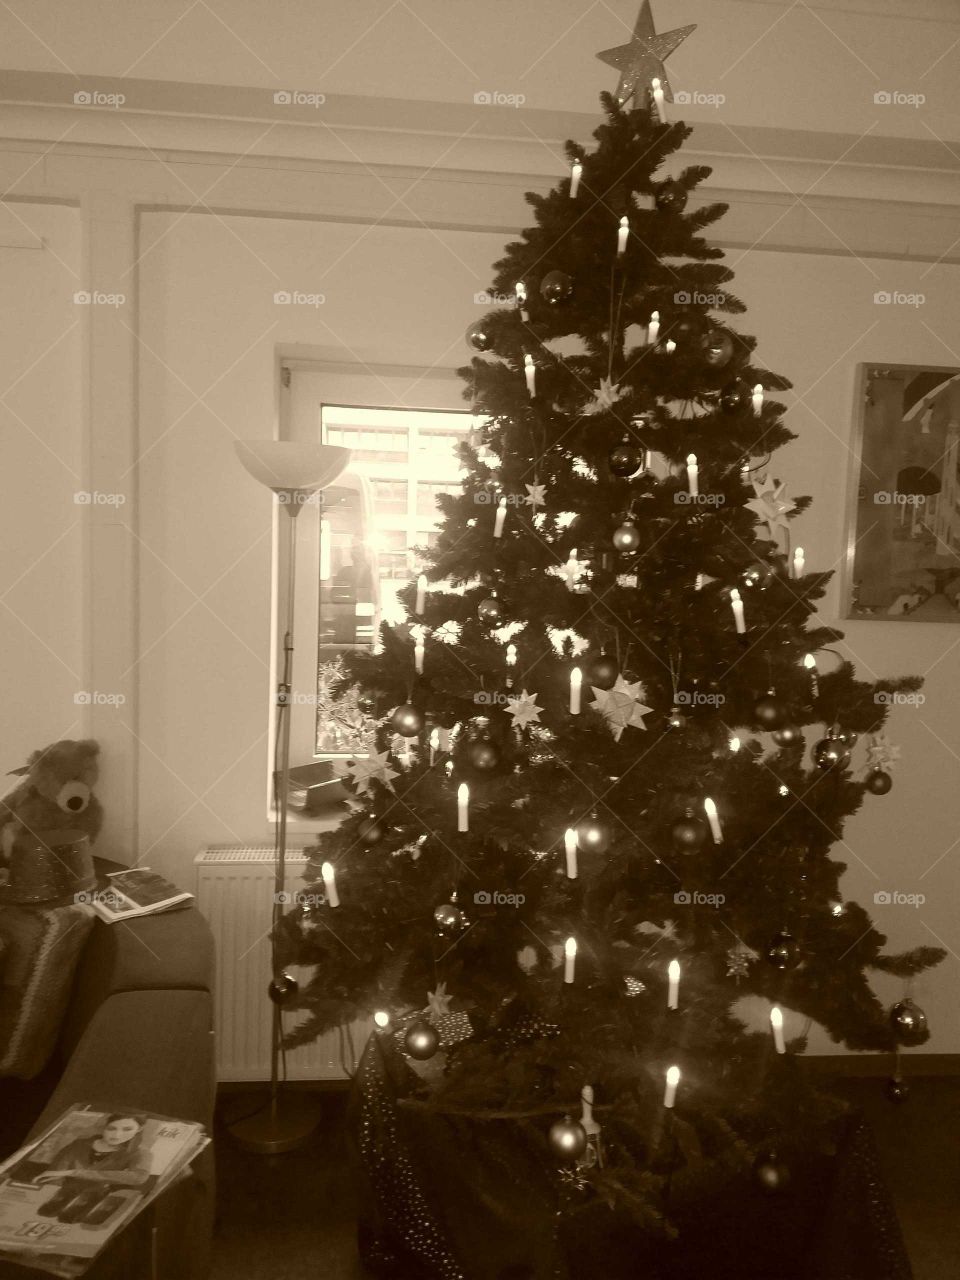 nostalgic christmas tree in sepia